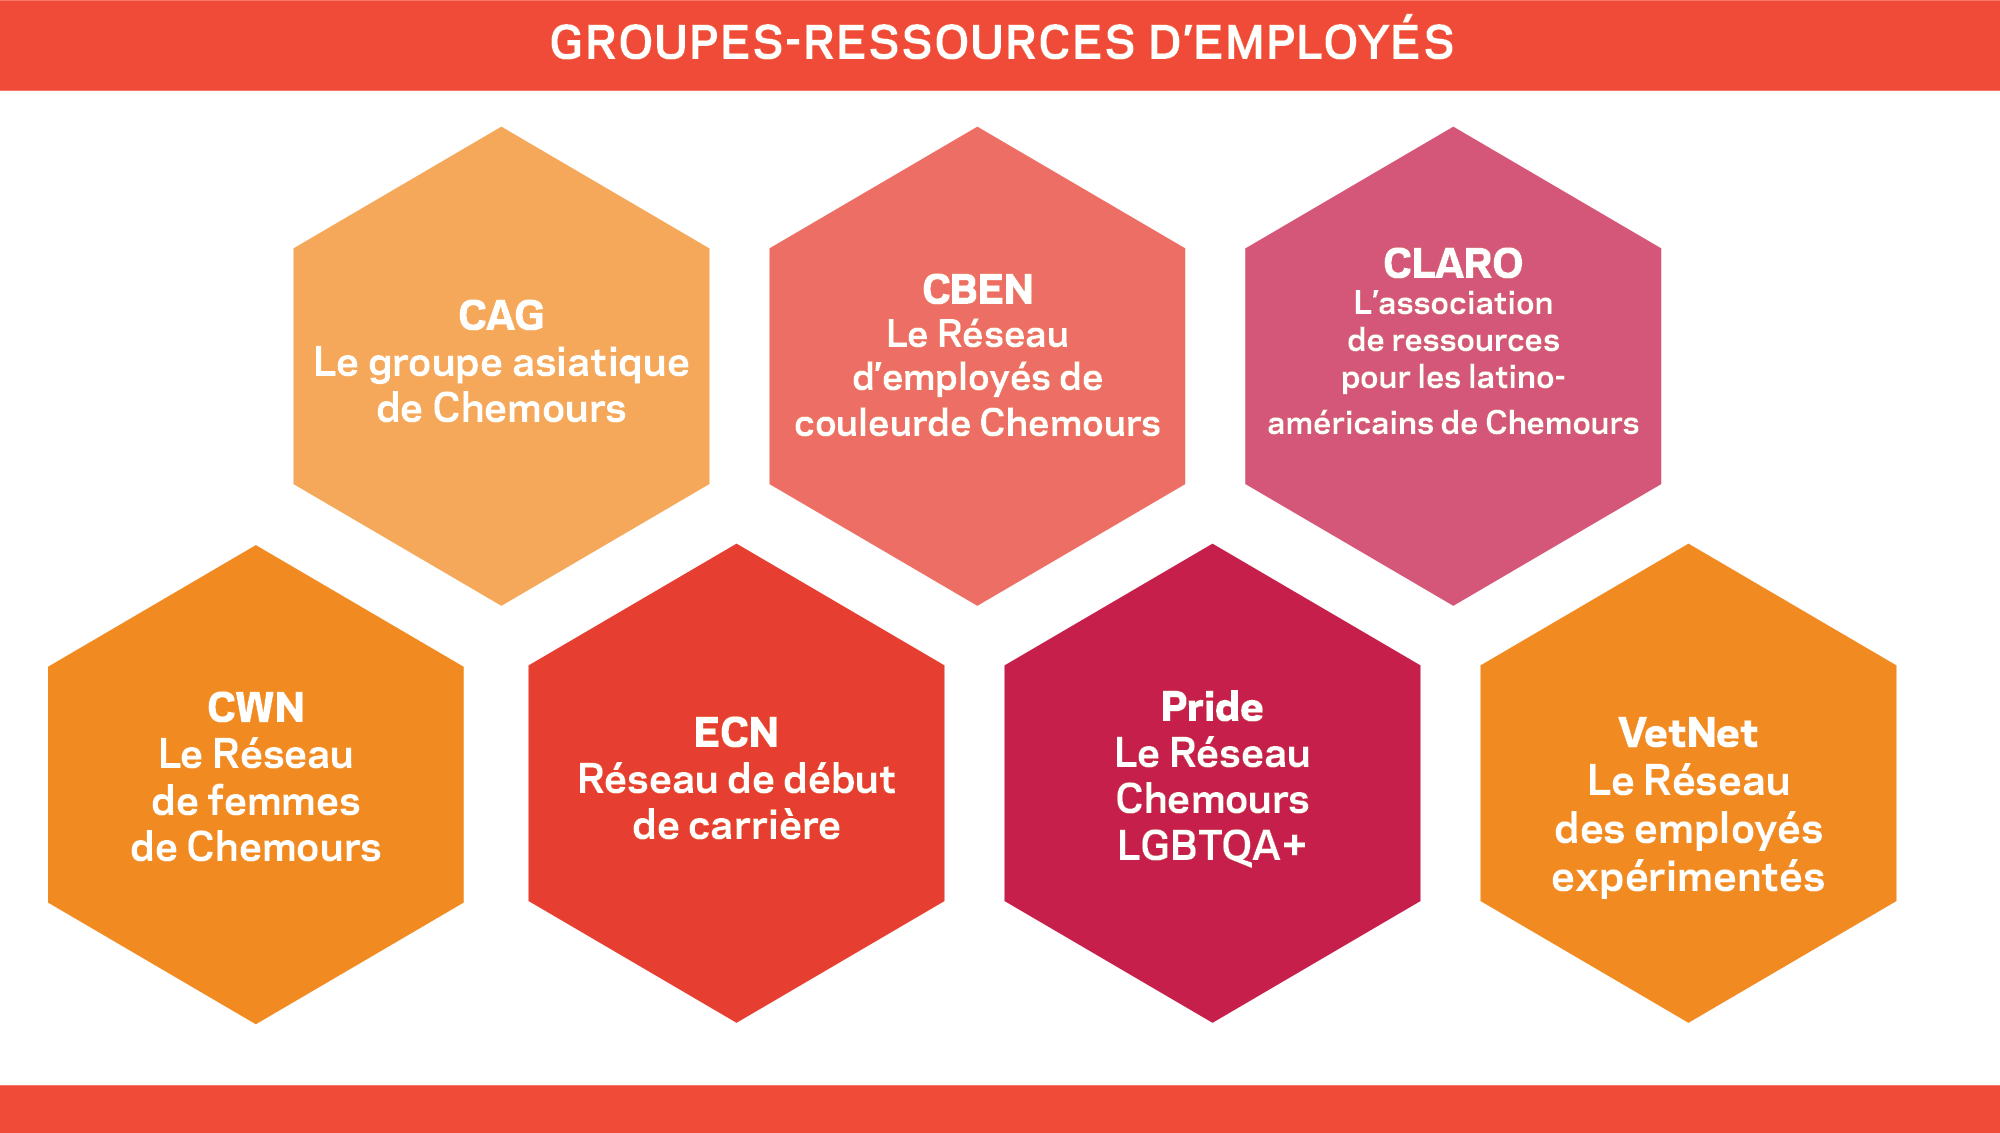 Groupes-ressources d’employés 